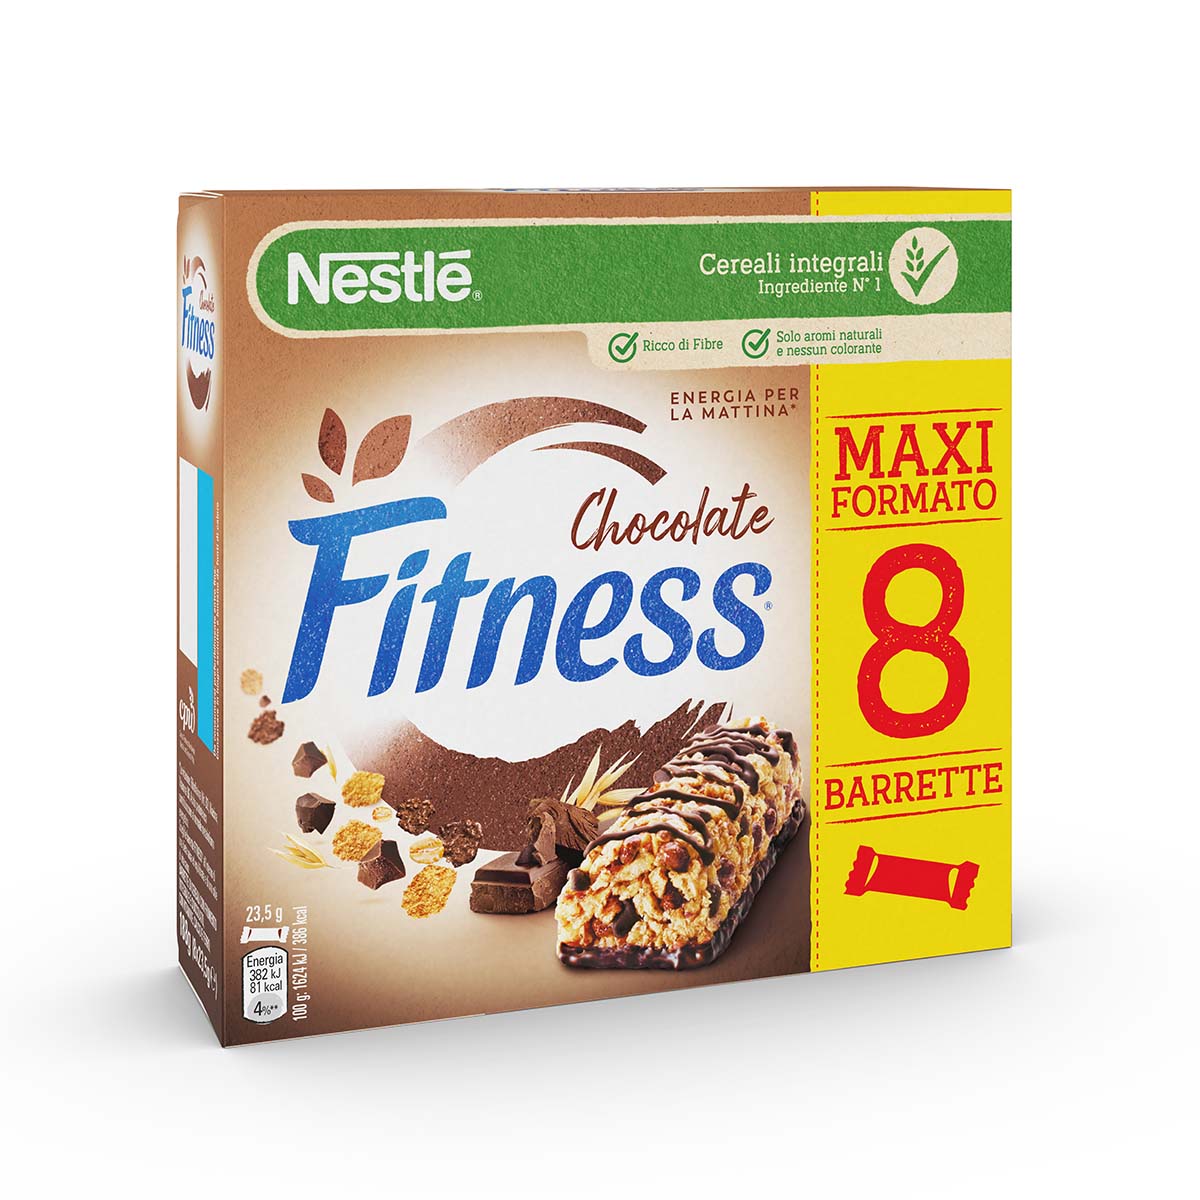 Fitness CIOCCOLATO Barrette di cereali con frumento integrale e cioccolato, con 5 vitamine, calcio e ferro x8